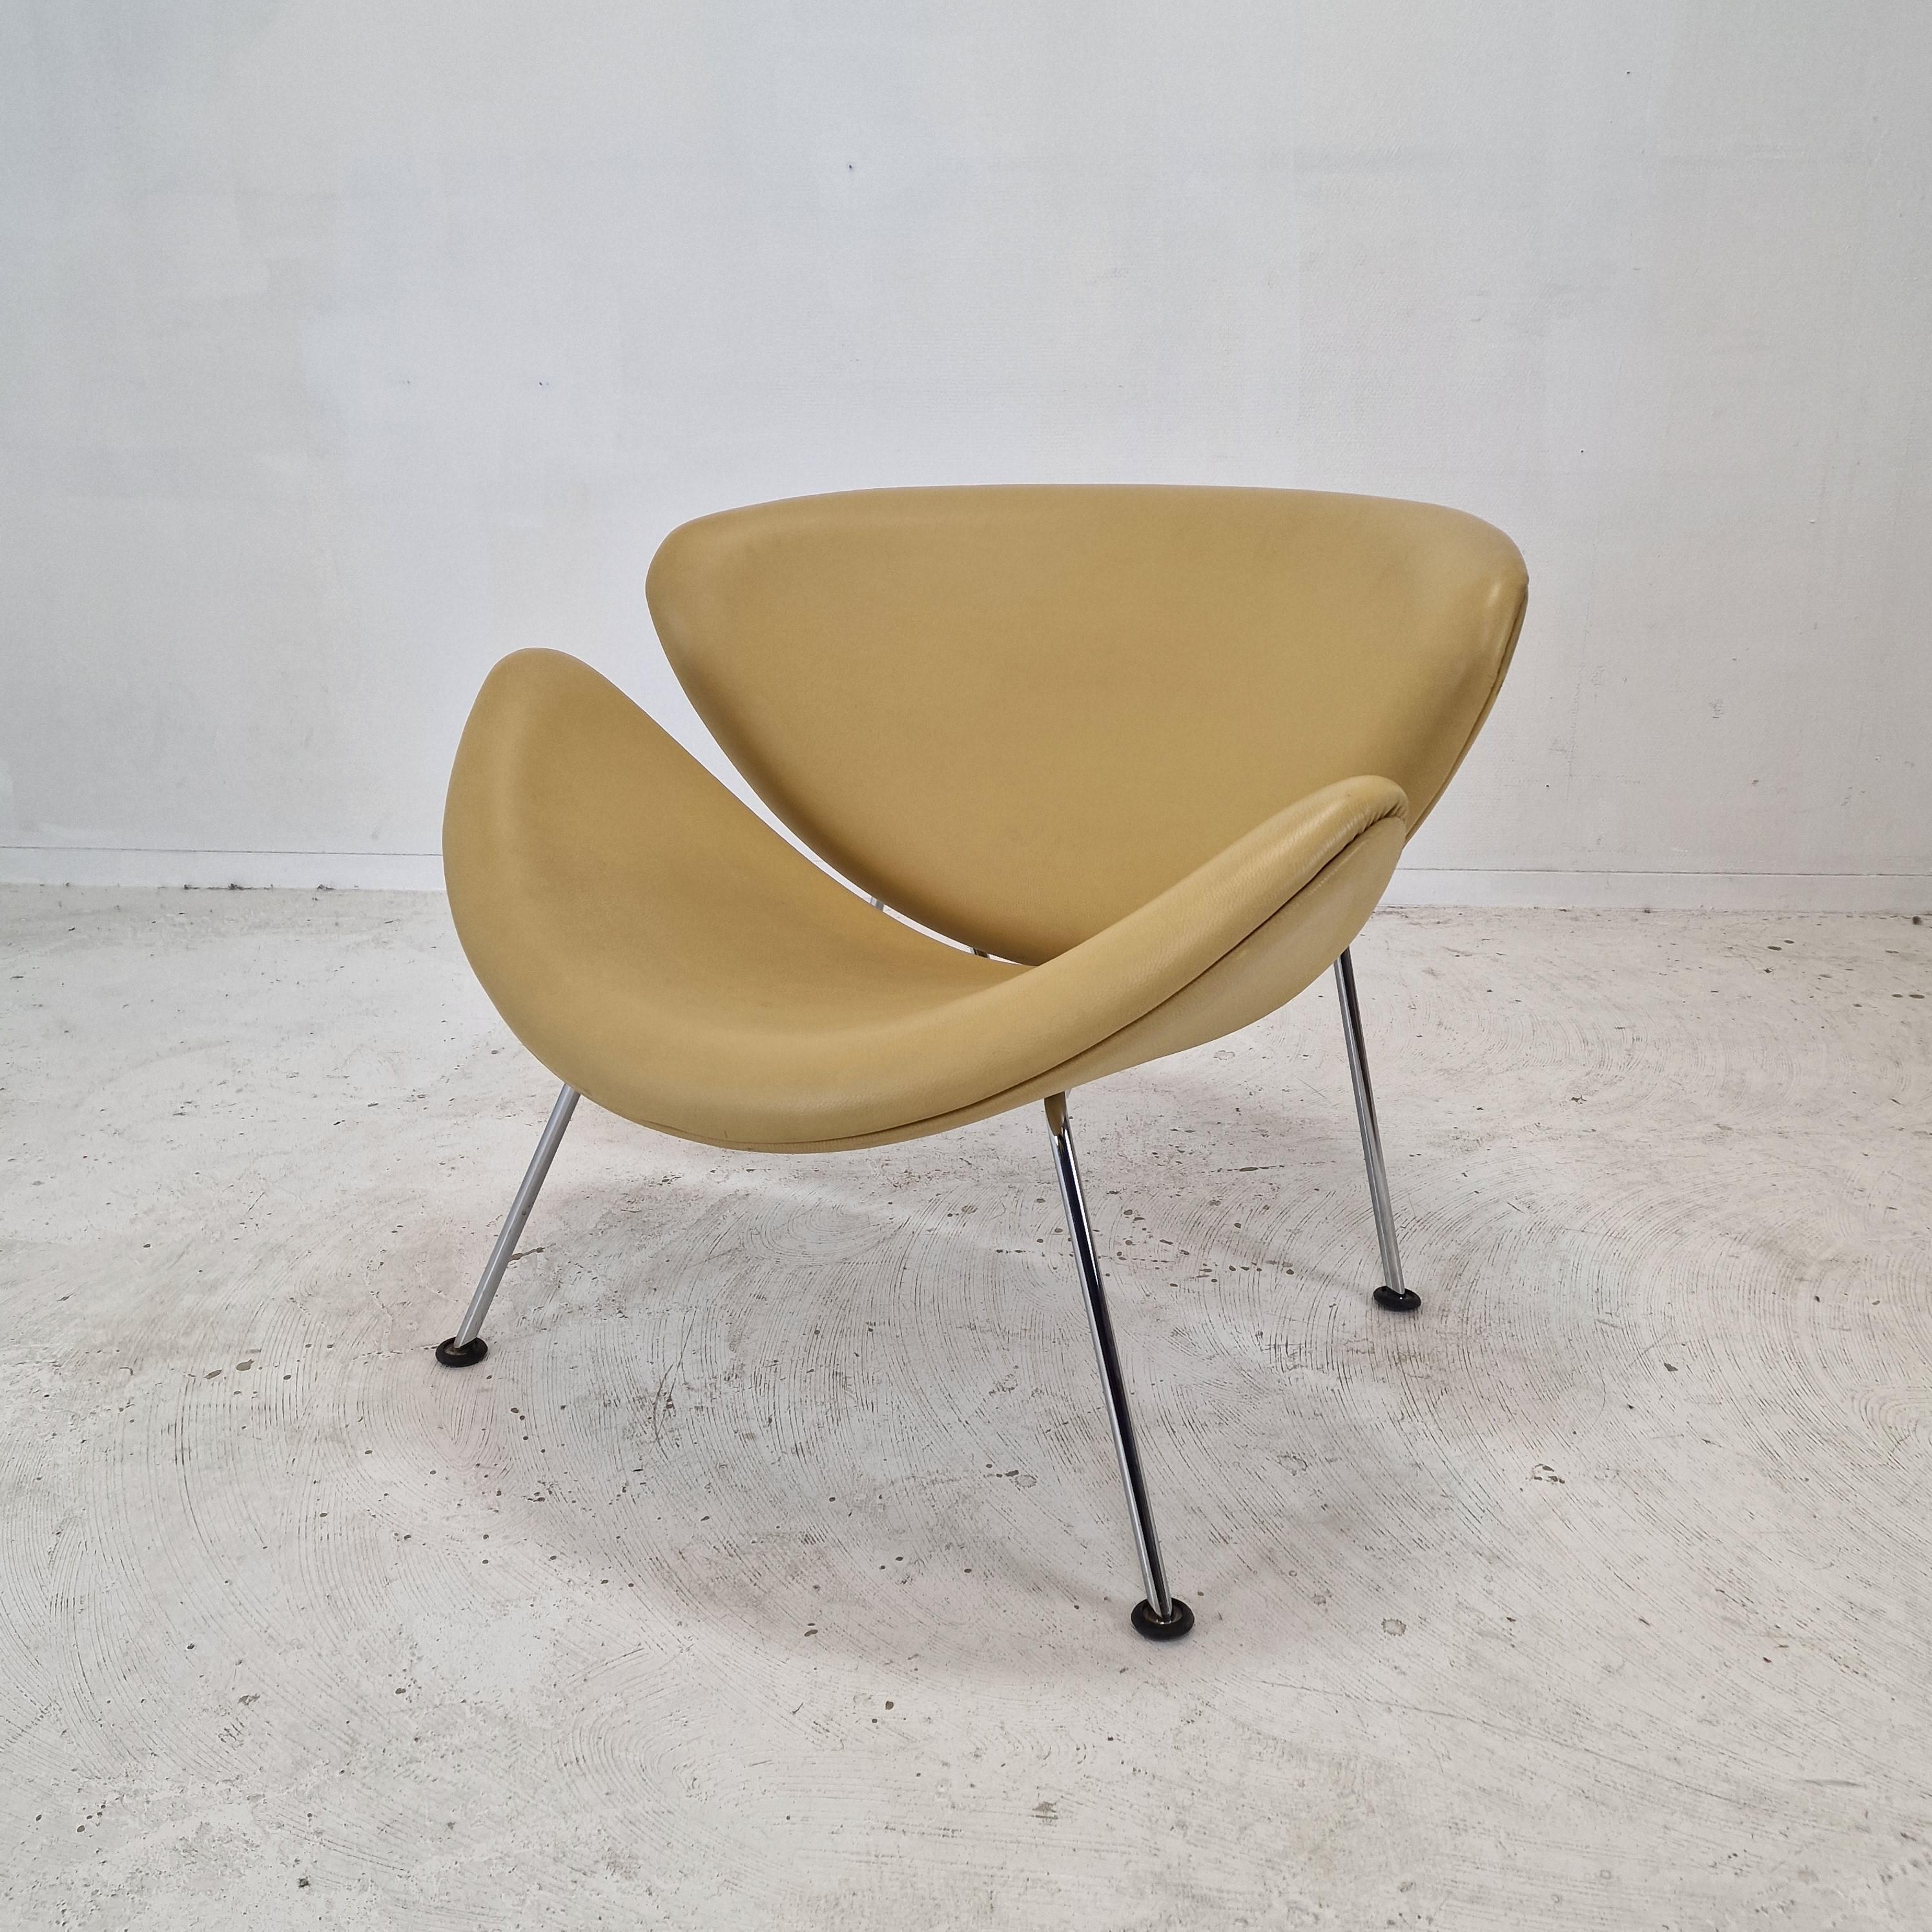 Der berühmte Artifort orange slice chair von Pierre Paulin aus den 60er Jahren.
Dieser originelle Stuhl mit verchromten Beinen wurde in den 80er Jahren hergestellt.

Es ist ein niedlicher und sehr bequemer Stuhl.

Es hat die ursprüngliche hohe